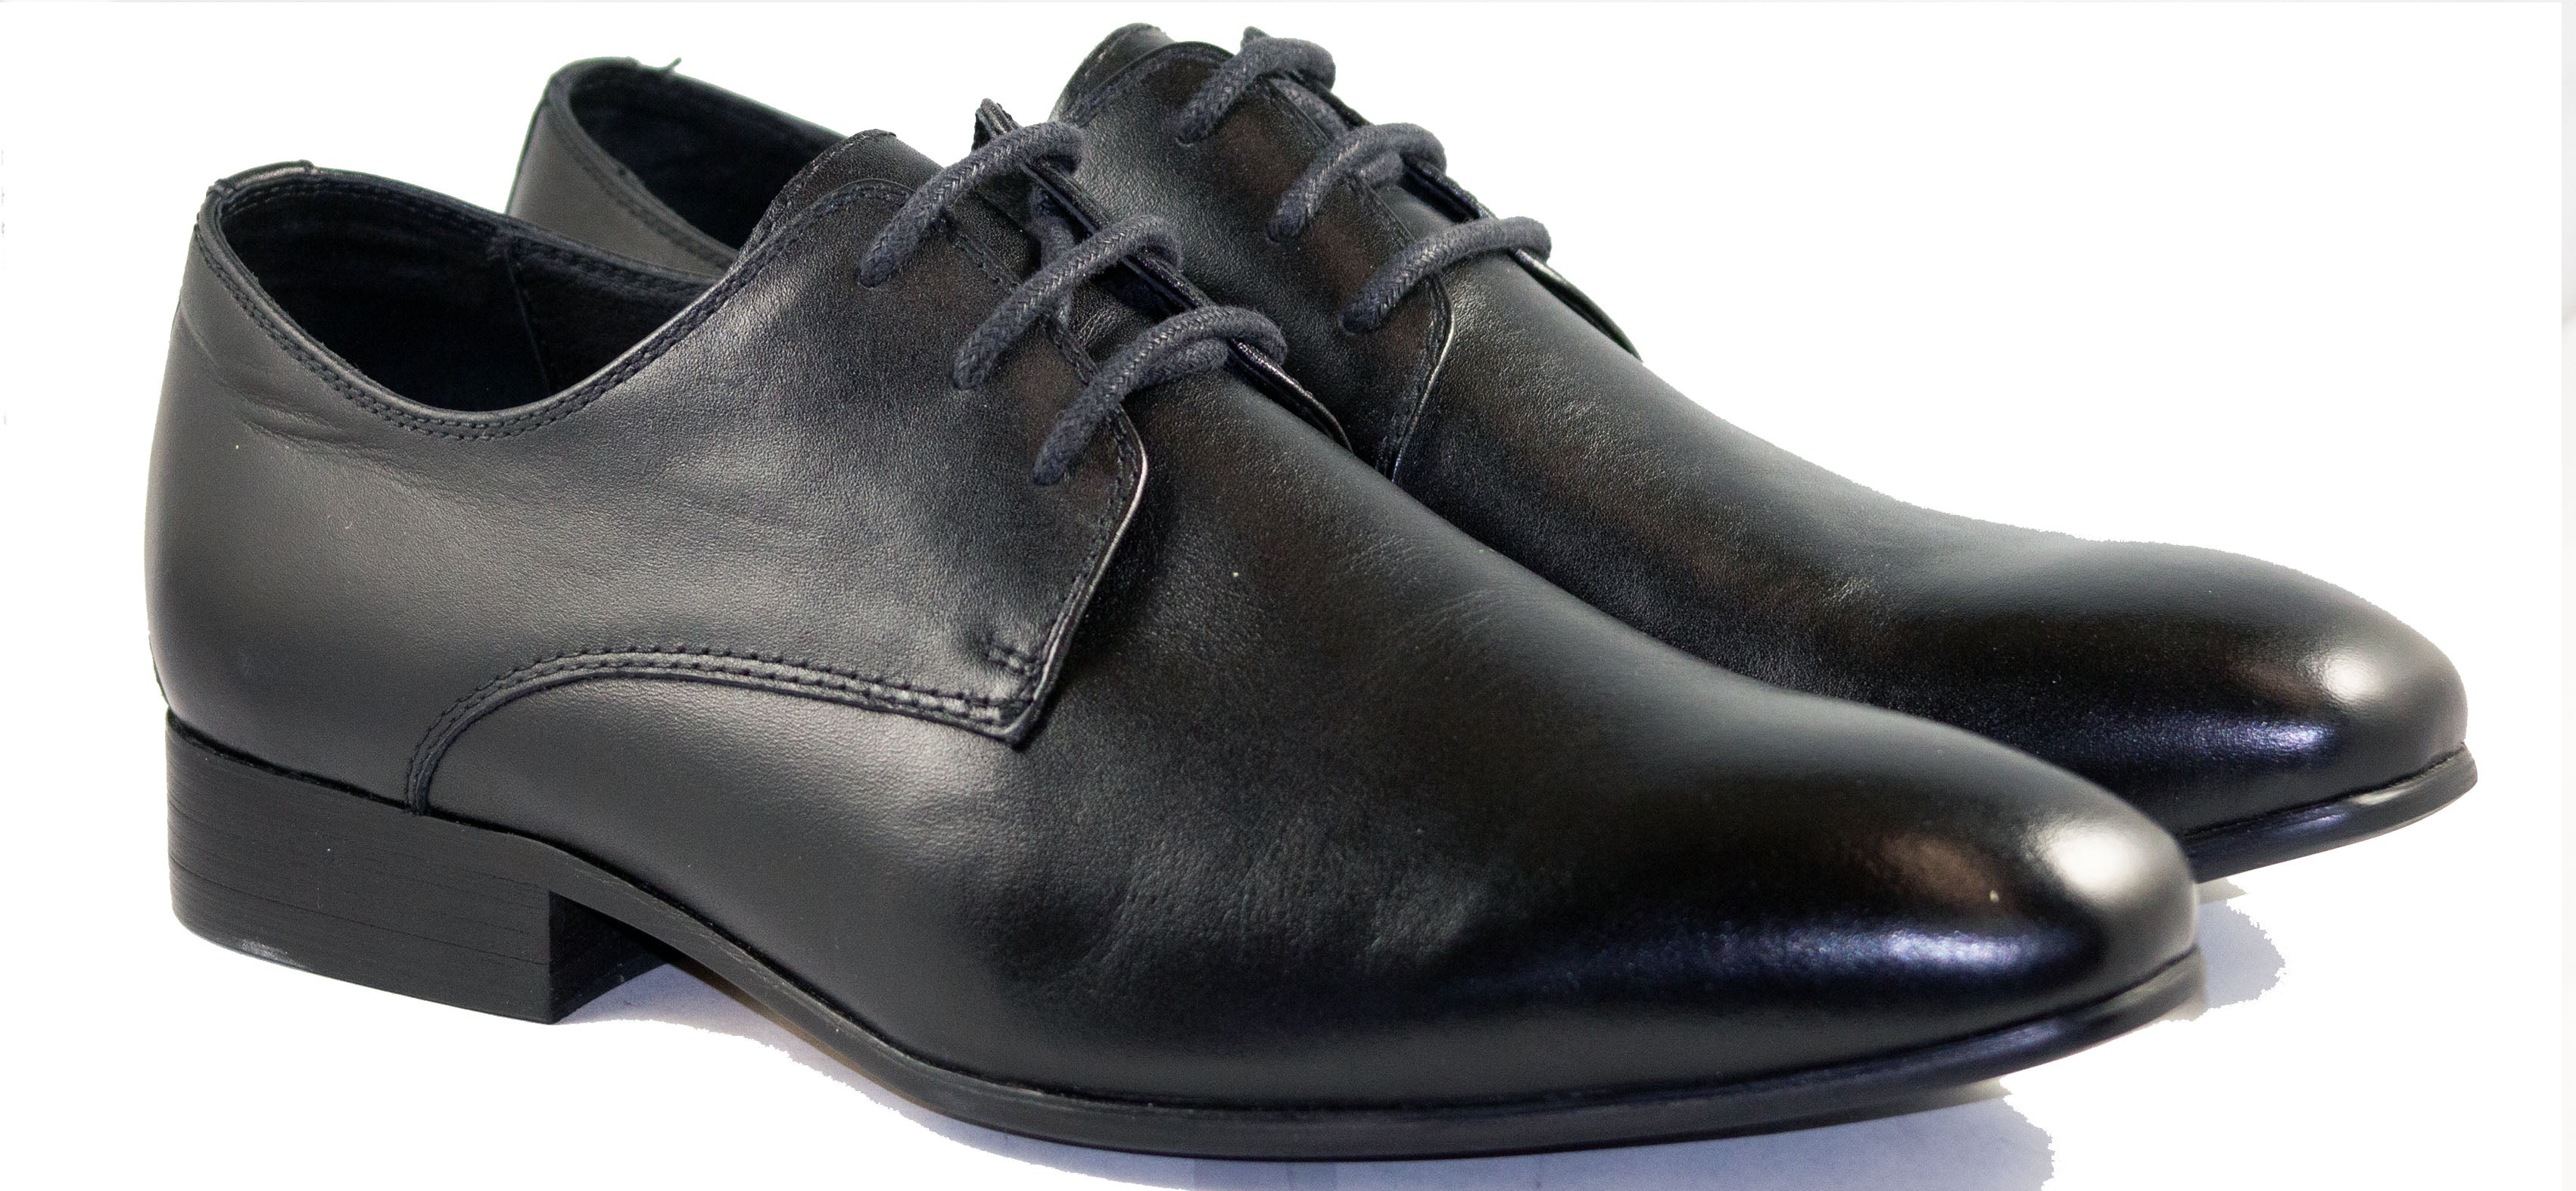 Mario Samello Men's Black Leather Plain Toe Dress Shoes  L007-9-E146